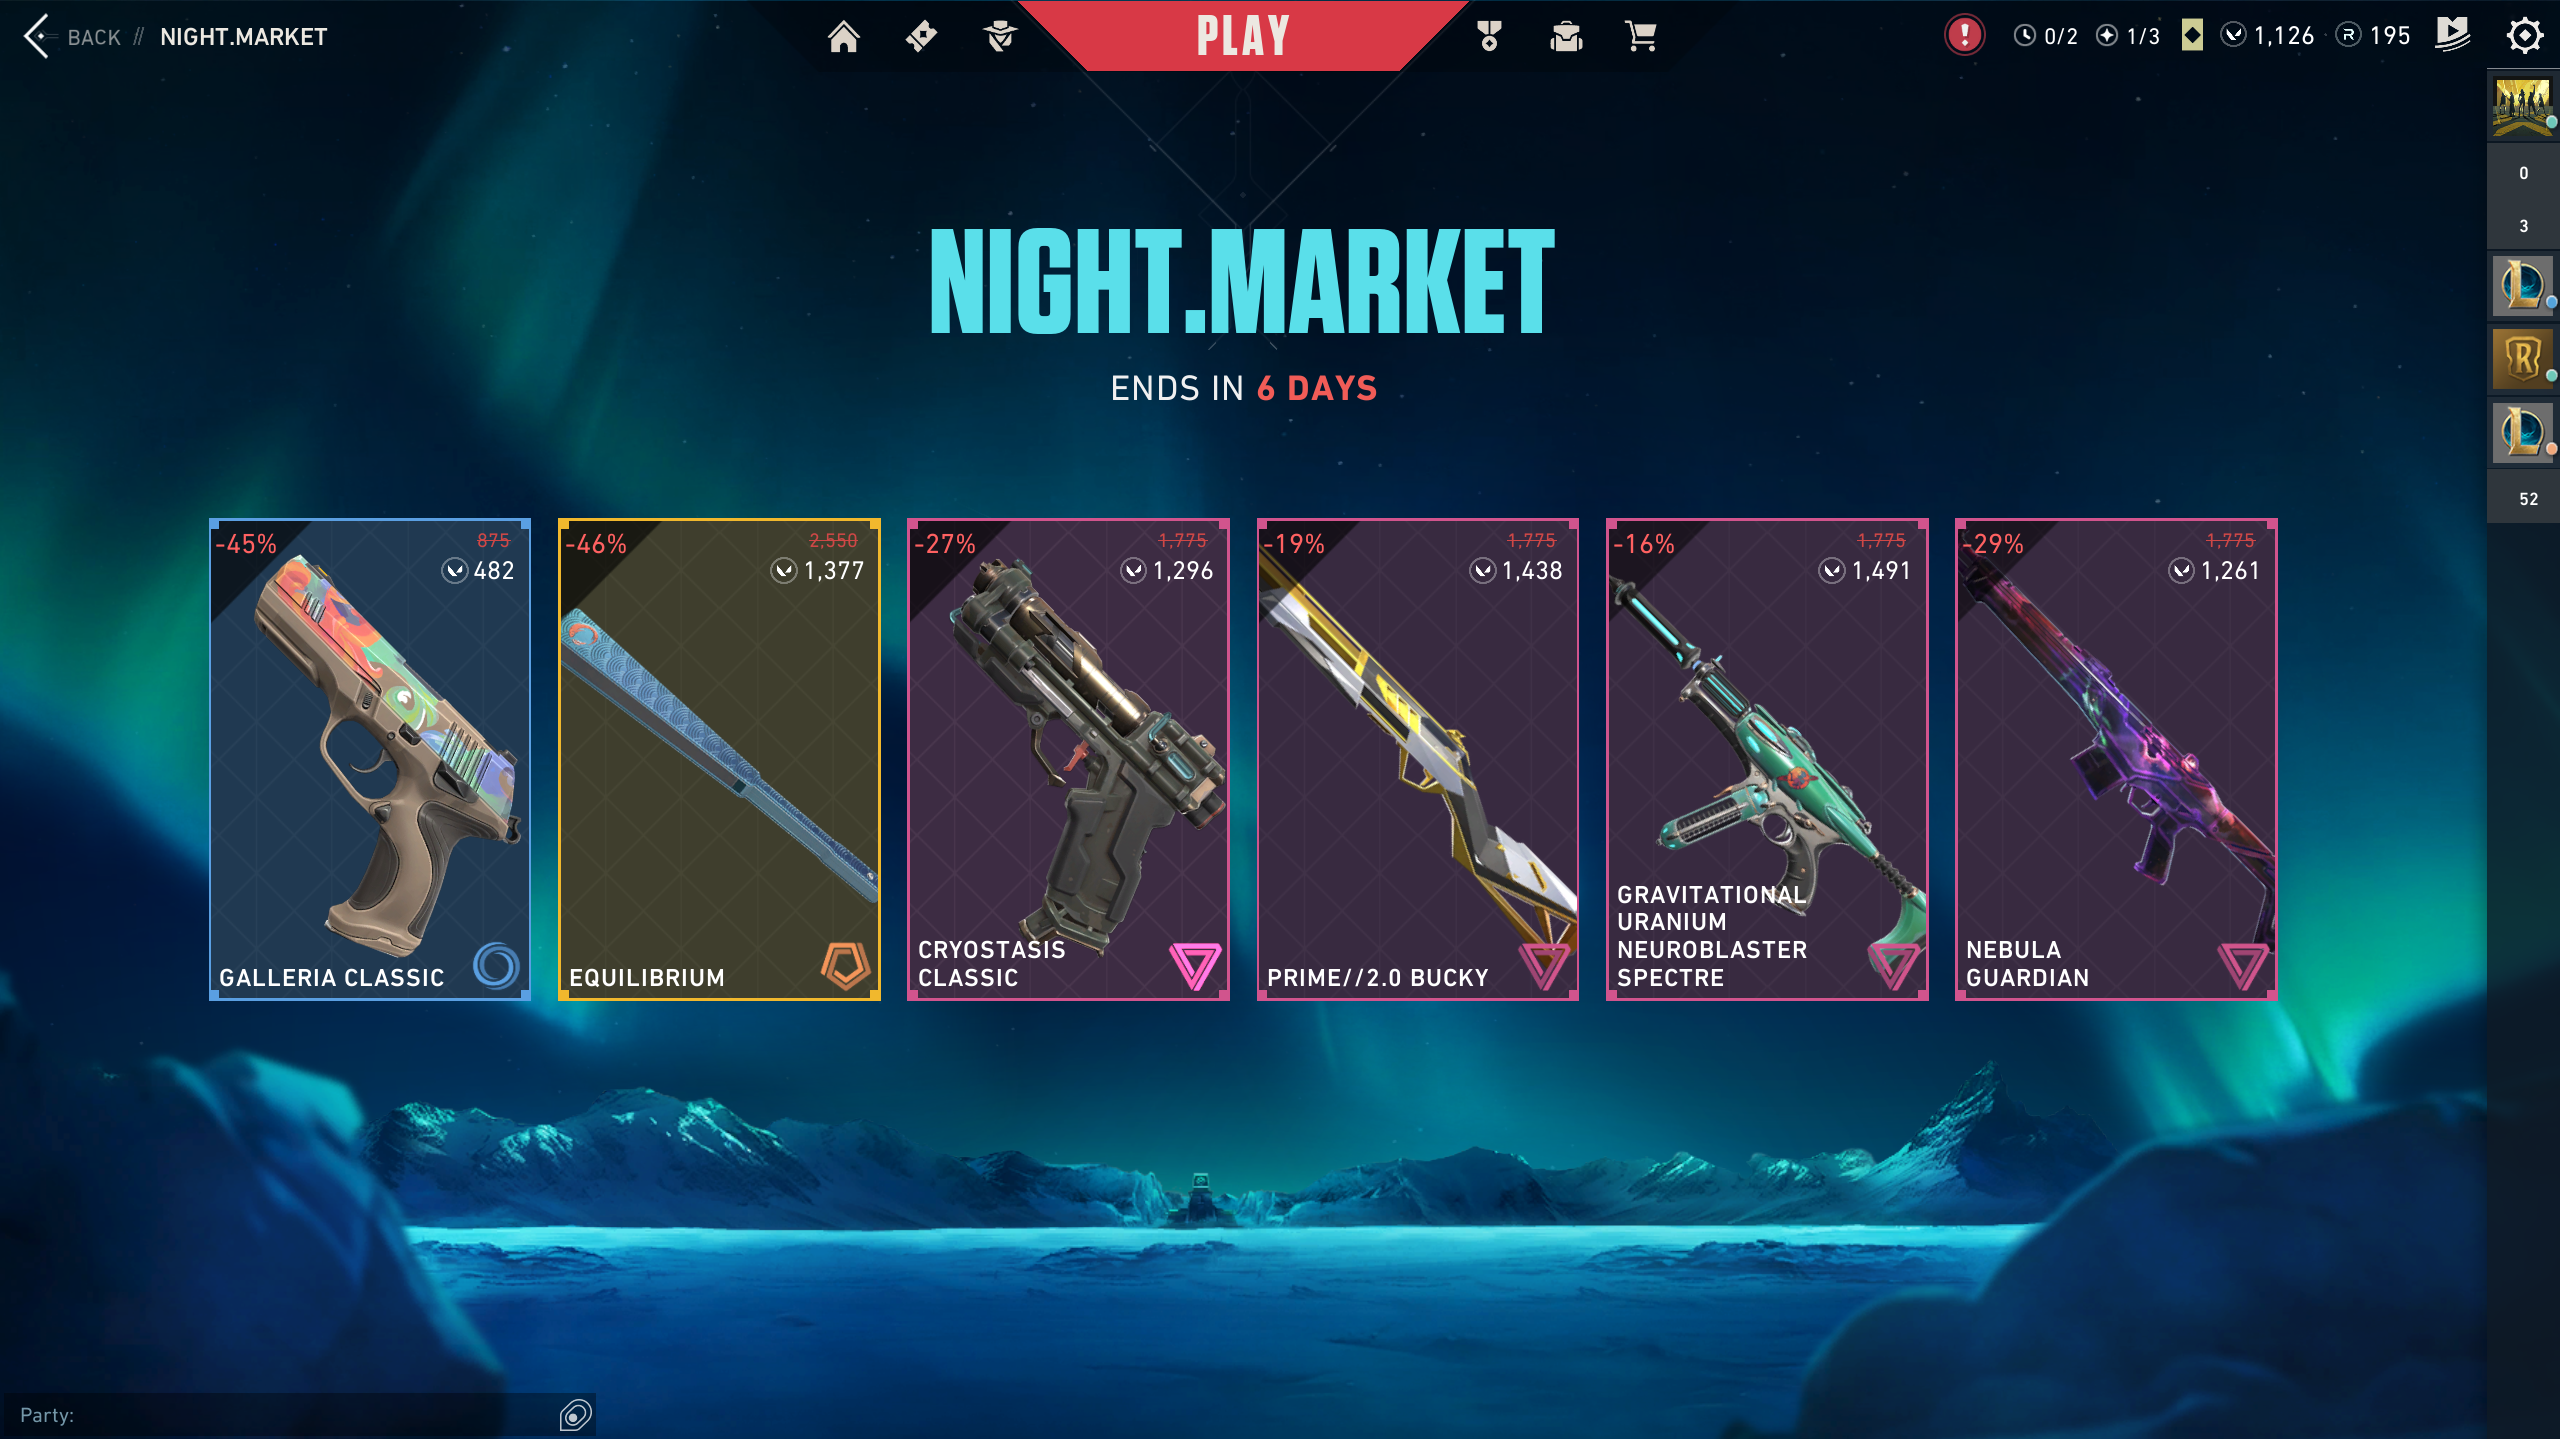 O colecție de piață de noapte deschisă, cu cinci piei diferite pentru diverse arme expuse